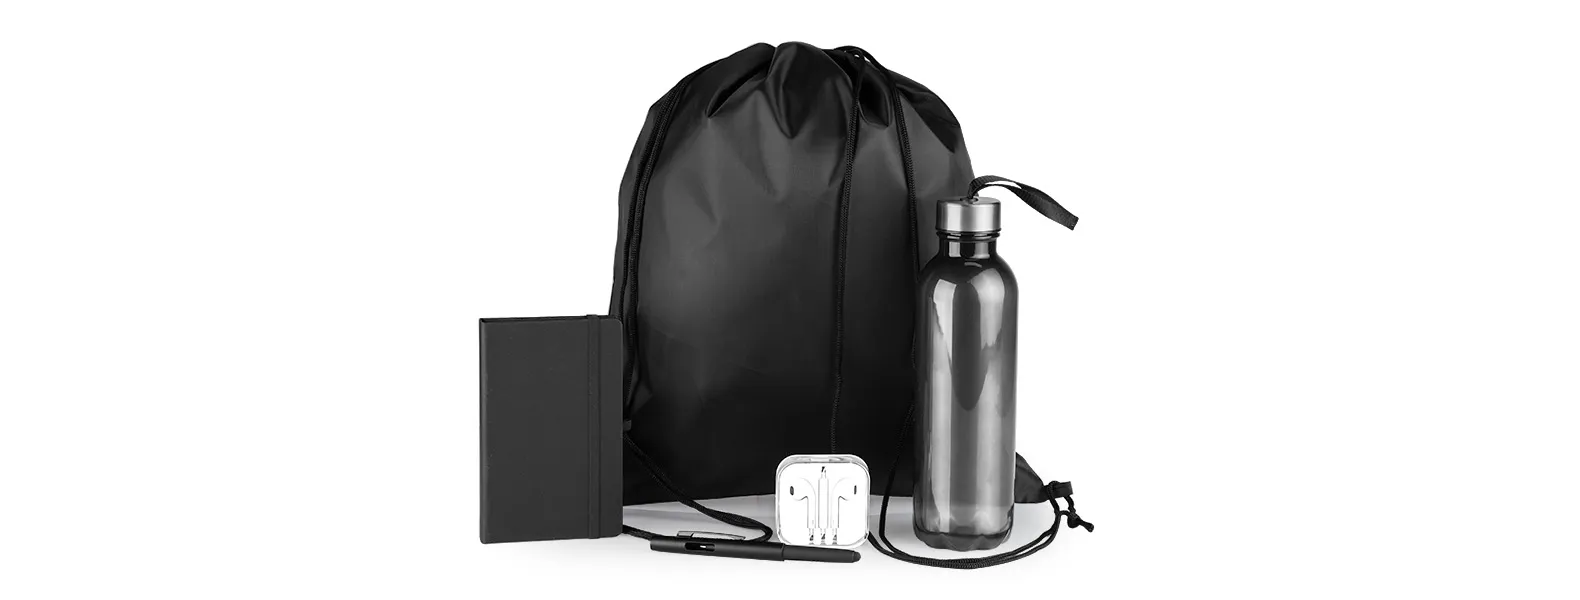 Kit boas vindas. Conta com mochila em nylon 420, garrafa pet, fone de ouvido, caderno sem pauta e caneta esferográfica com tampa e ponta touch.